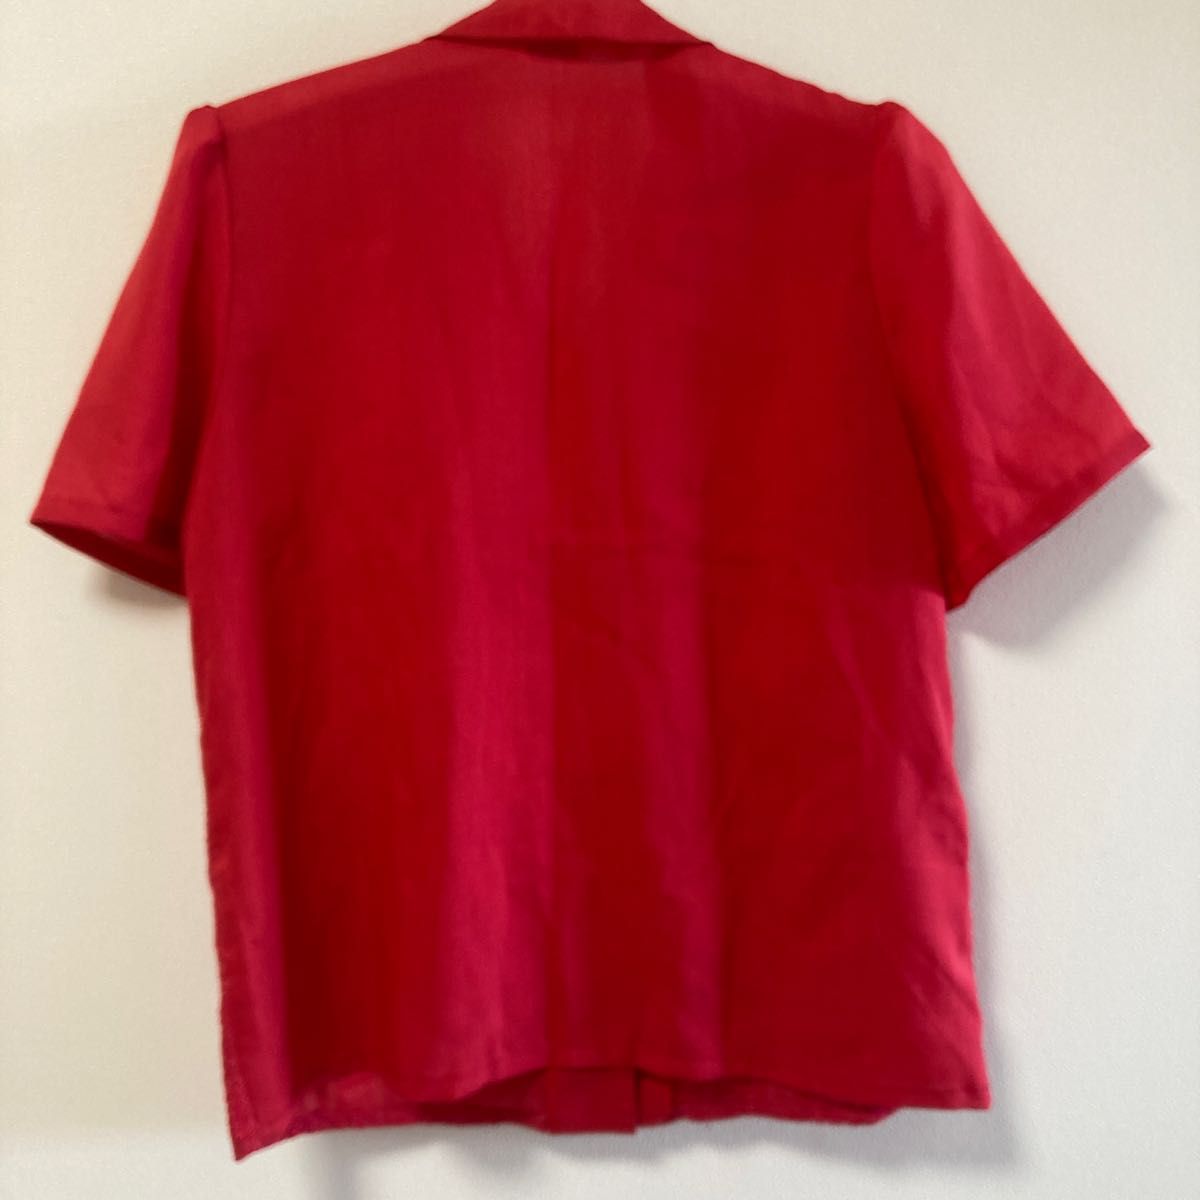 半袖レース柄シャツ。赤色。Mサイズ